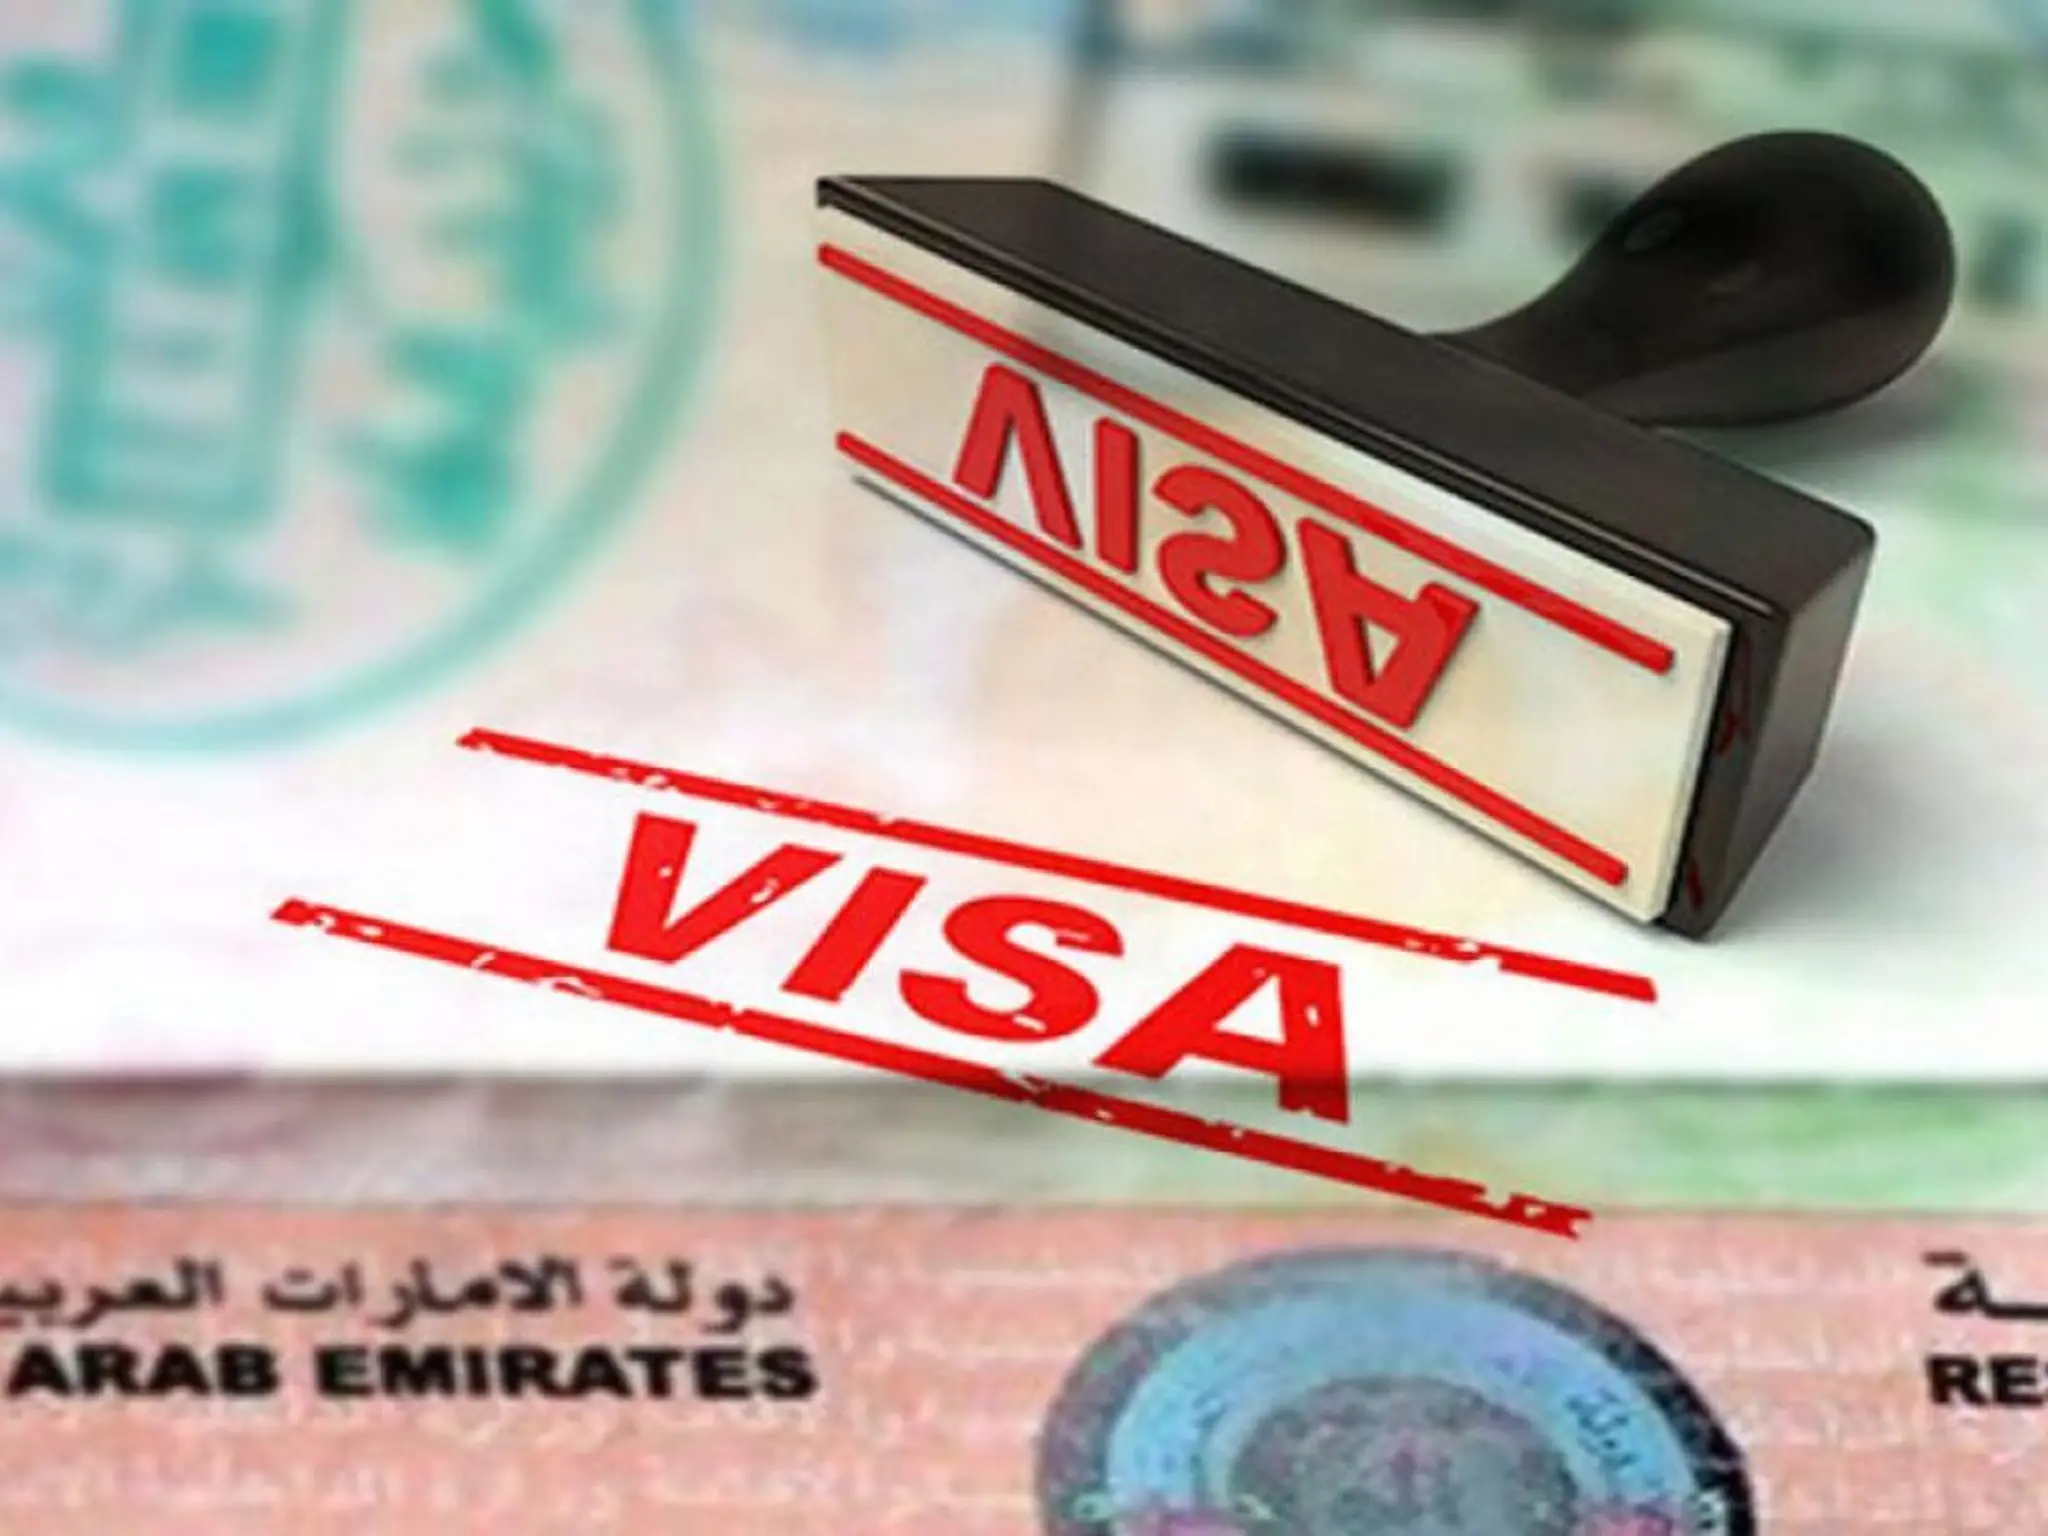 الإمارات تطلب رسميآ مغادرة الزوار والمقيمين من أراضيها في هذه الحالة